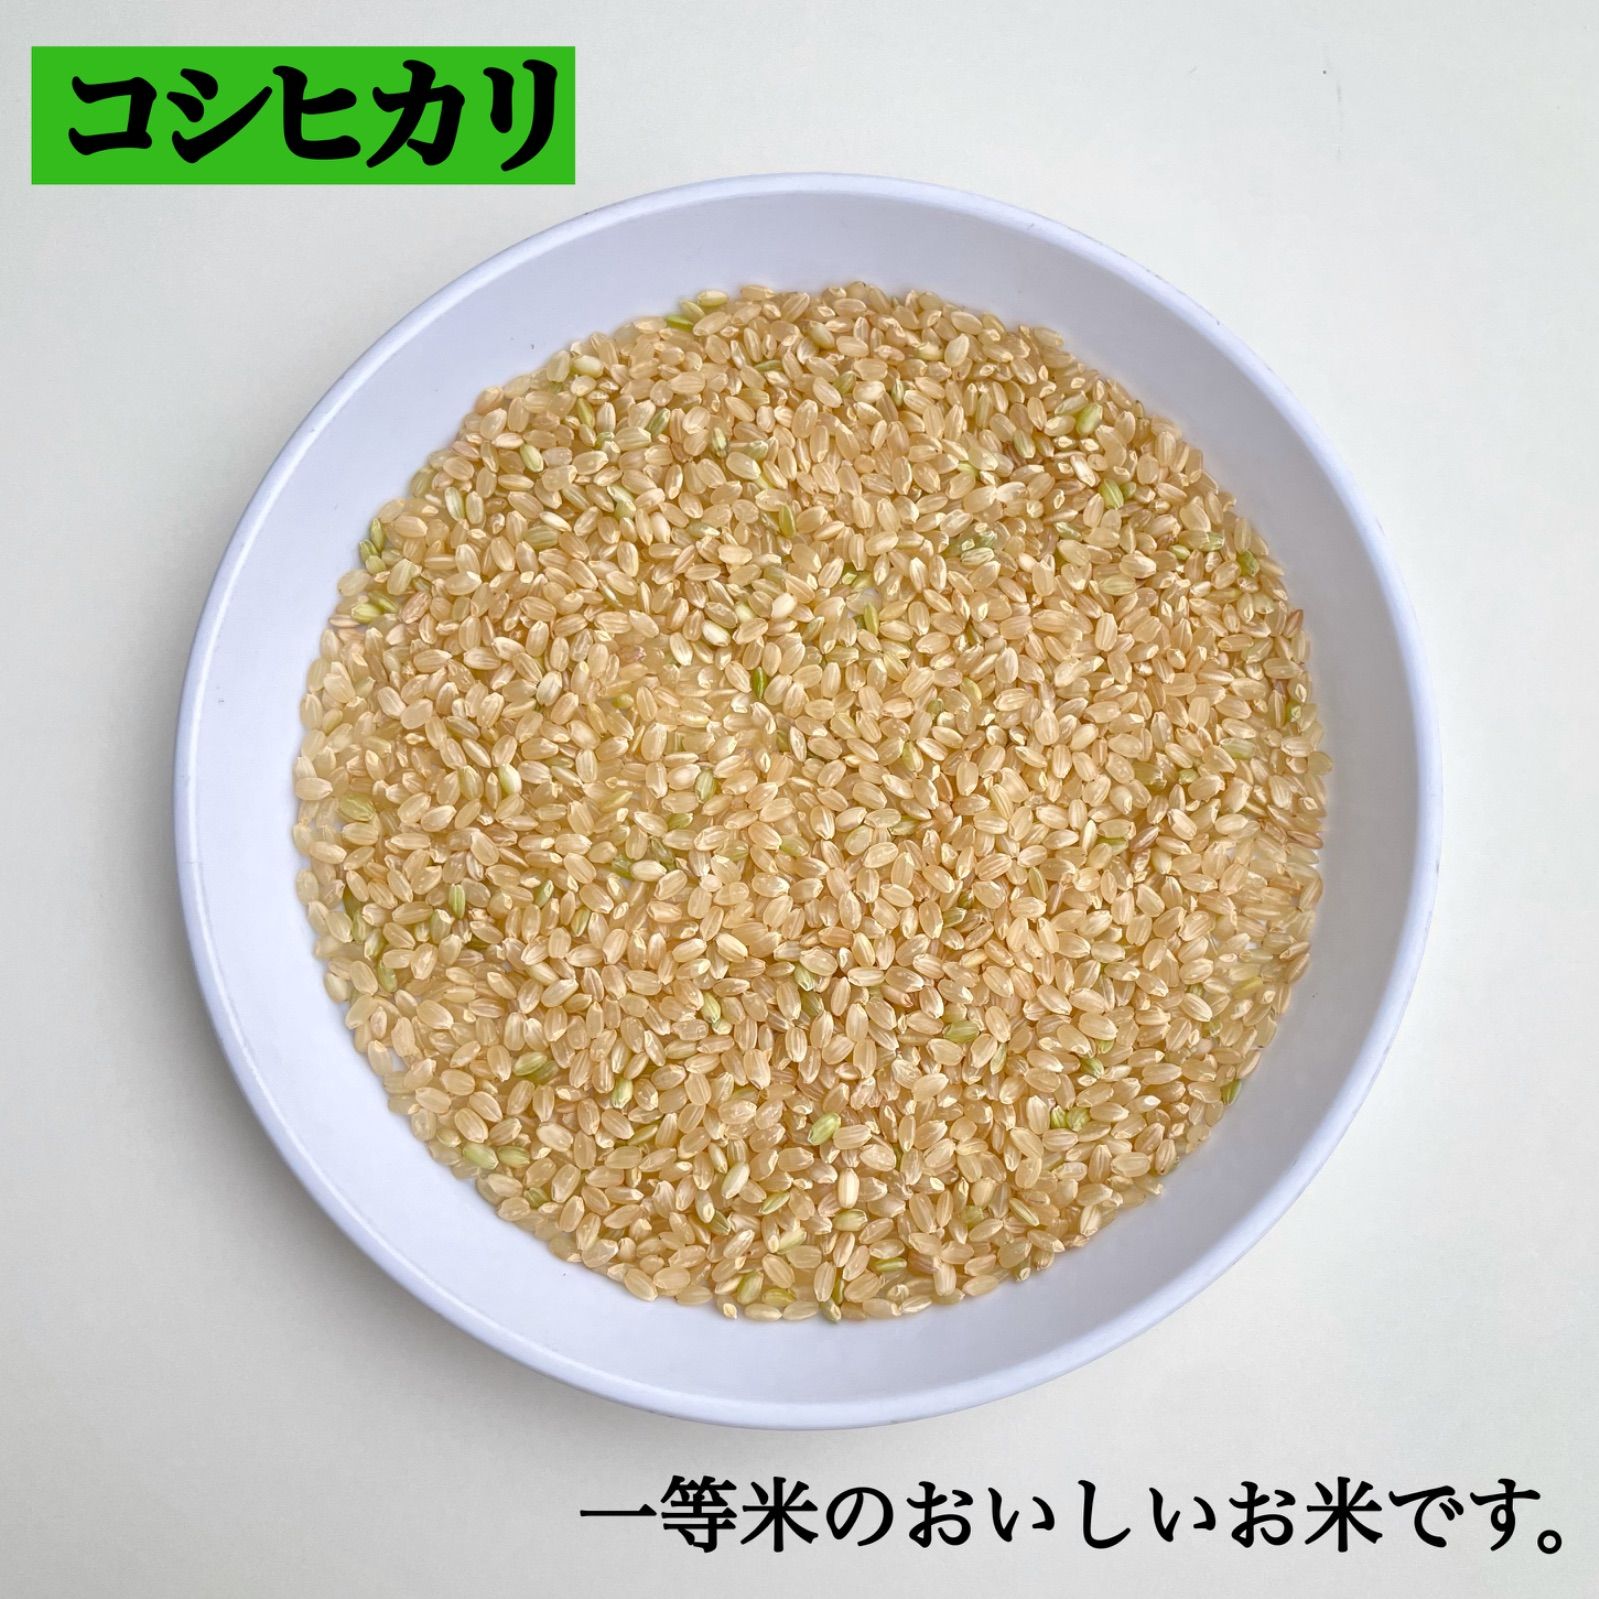 【精米無料】新潟県長岡産令和2年度コシヒカリ整粒20キロ玄米